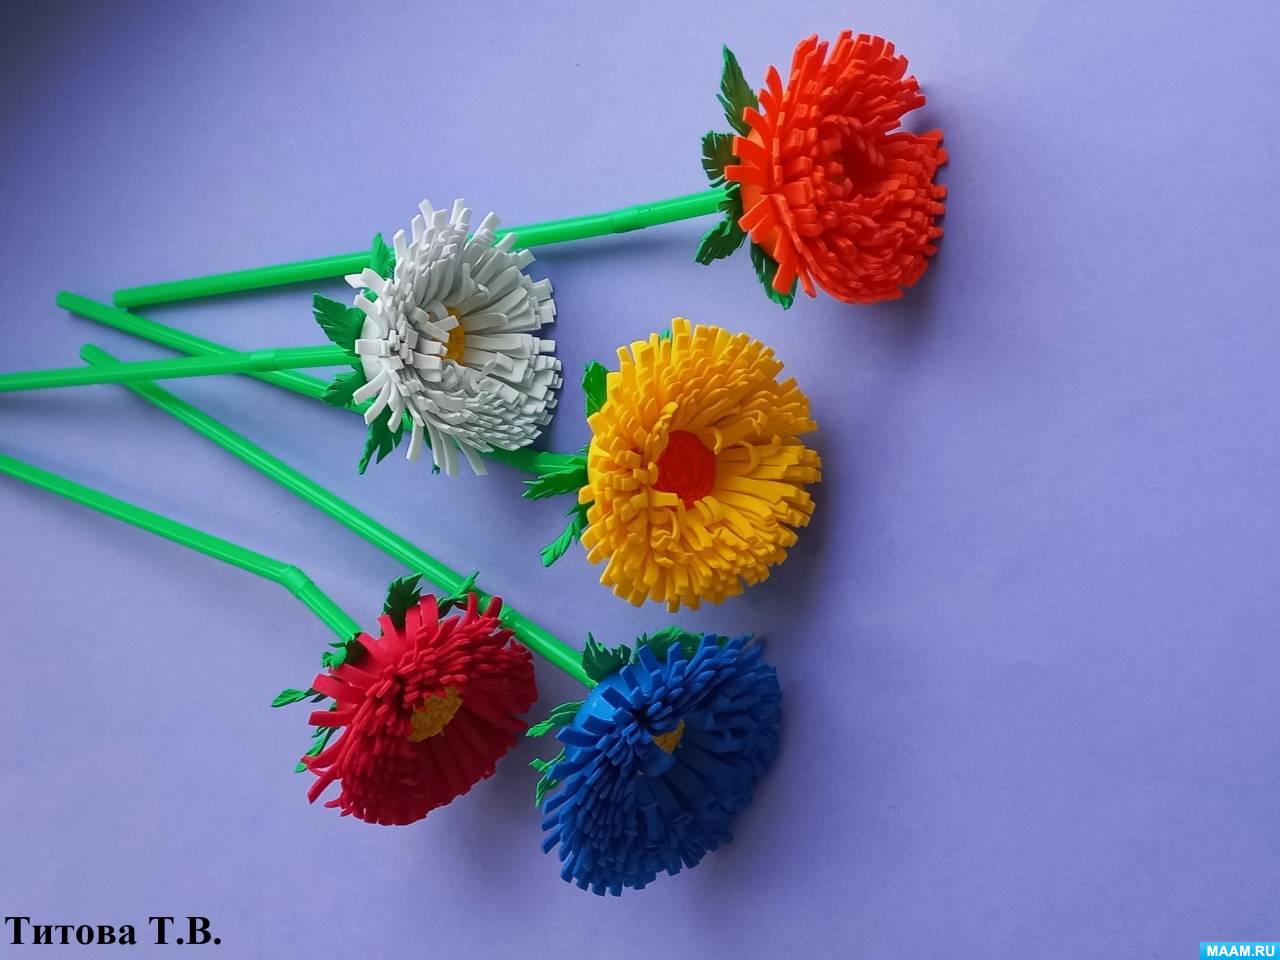 Подарок учителю – своими руками: брошь-цветок из ткани. Как сделать цветок из ткани